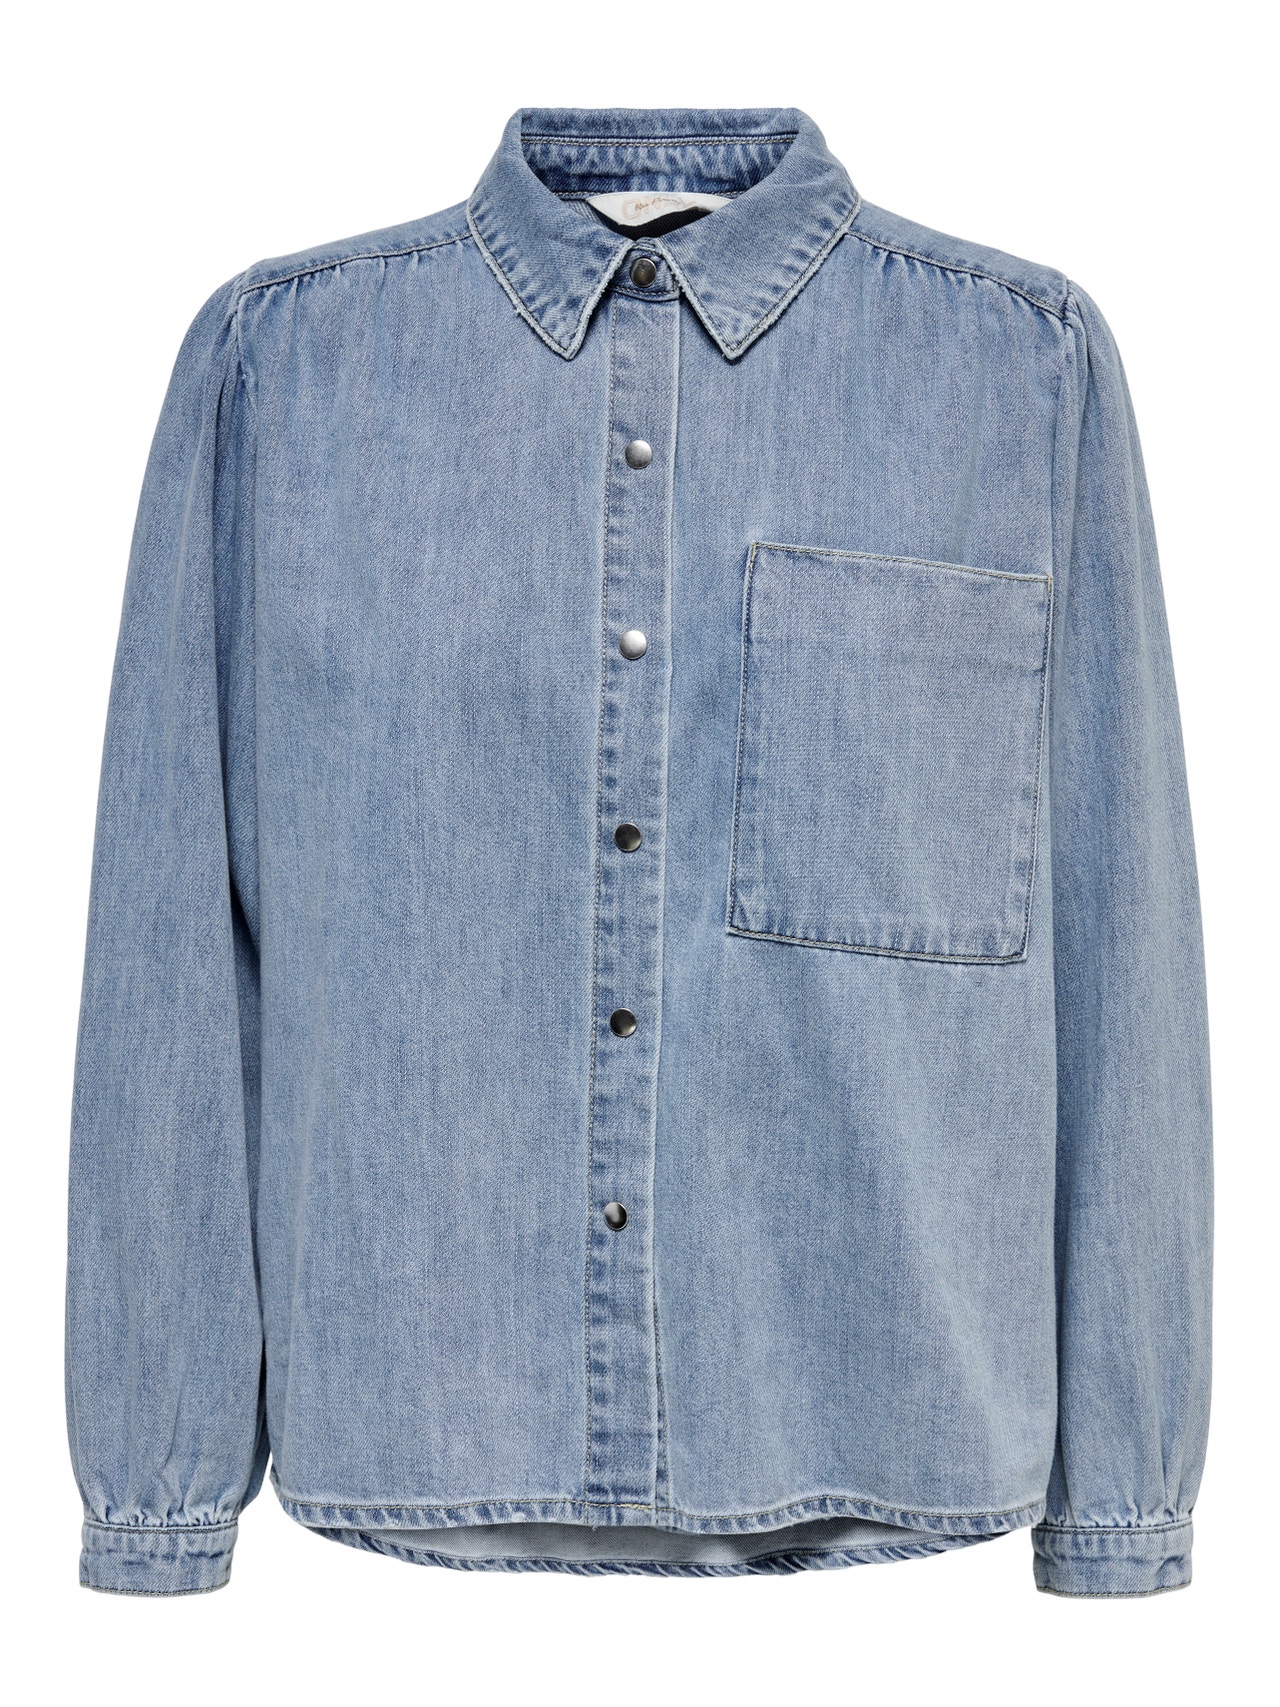 ONLY Denimskjorte med pufærmer -Light Blue Denim - 15267501